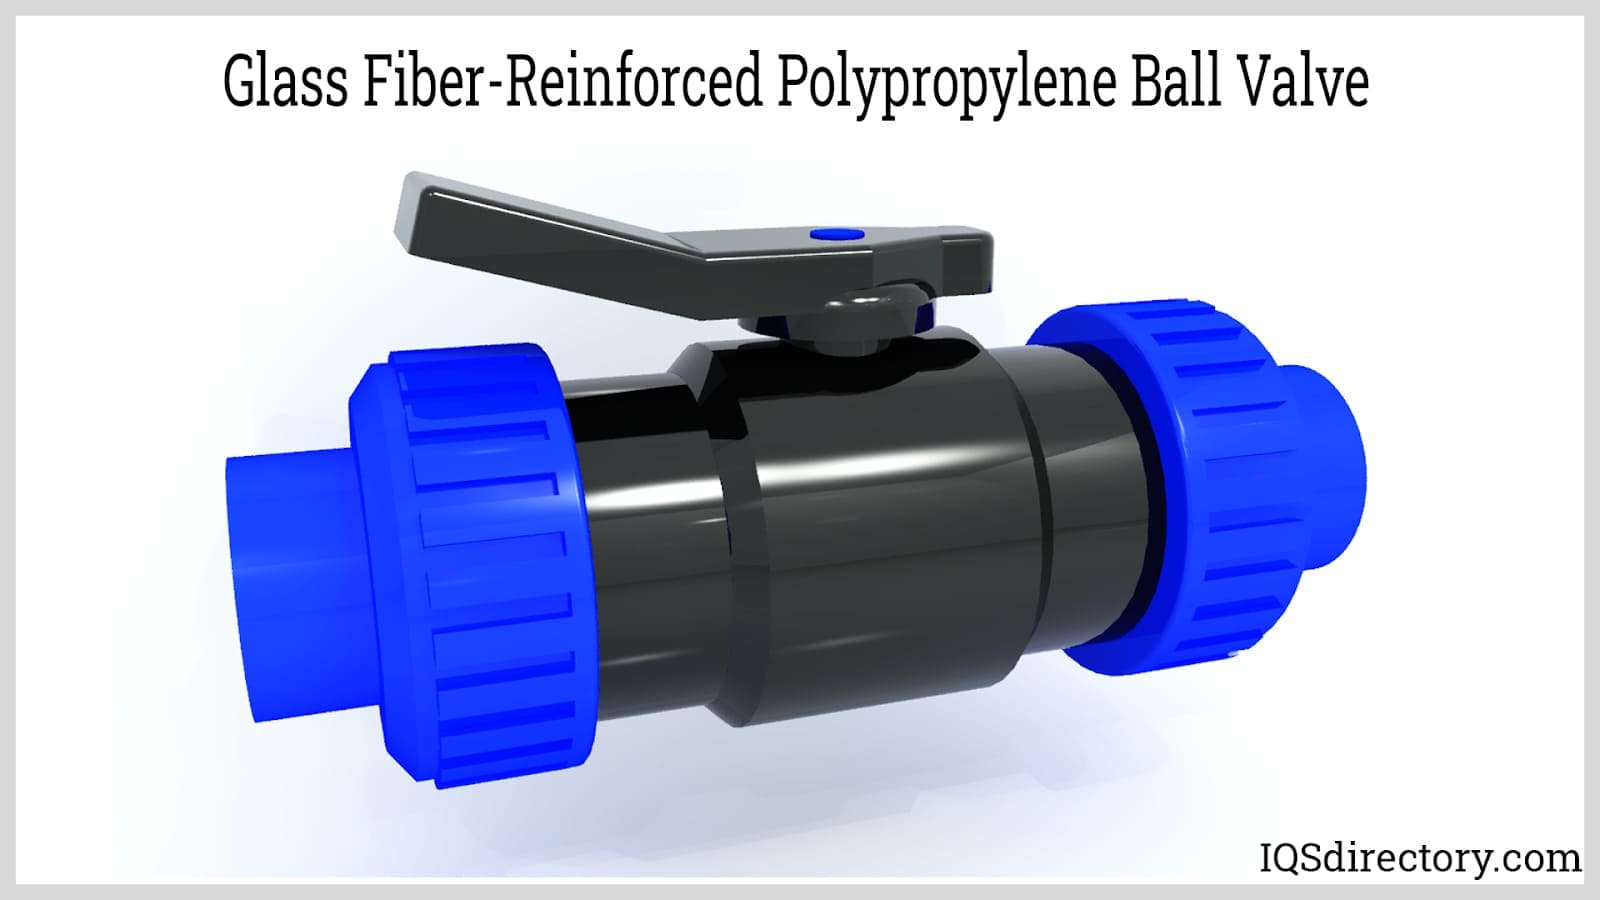 Glass Fiber-Reinforced Polypropylene Ball Valve